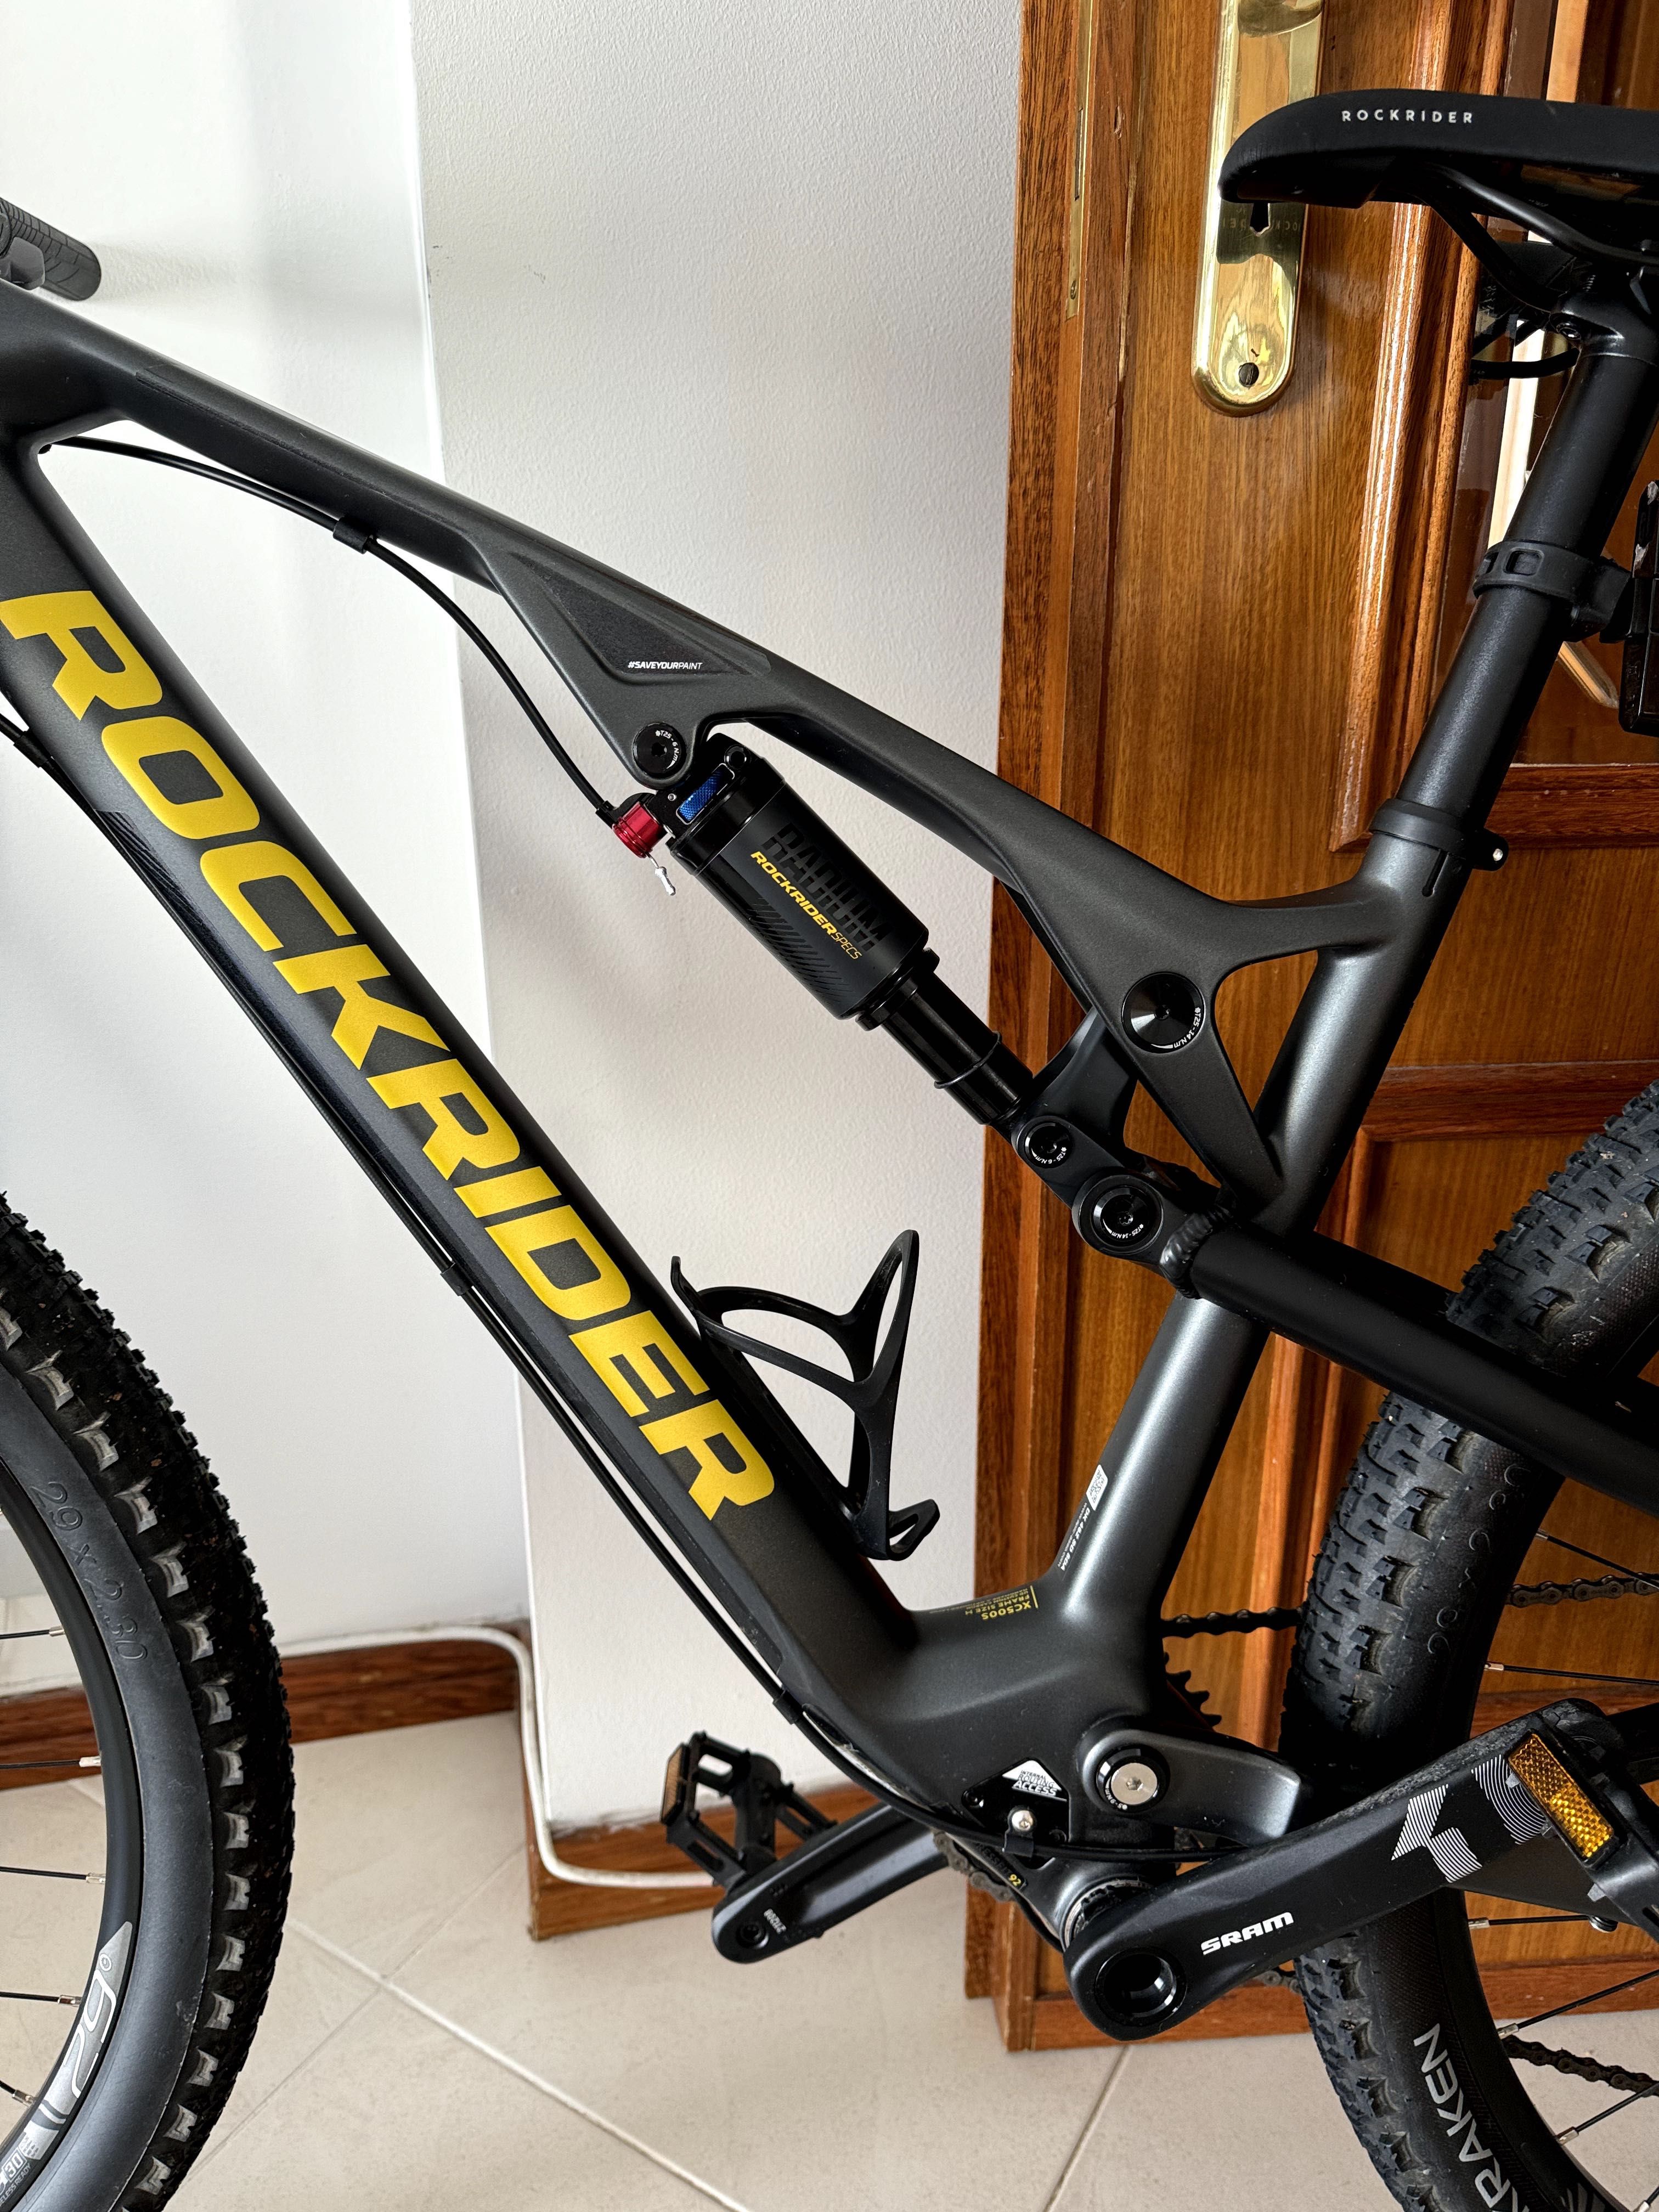 Bicicleta BTT cross country XC 500 S quadro Carbono e alumínio